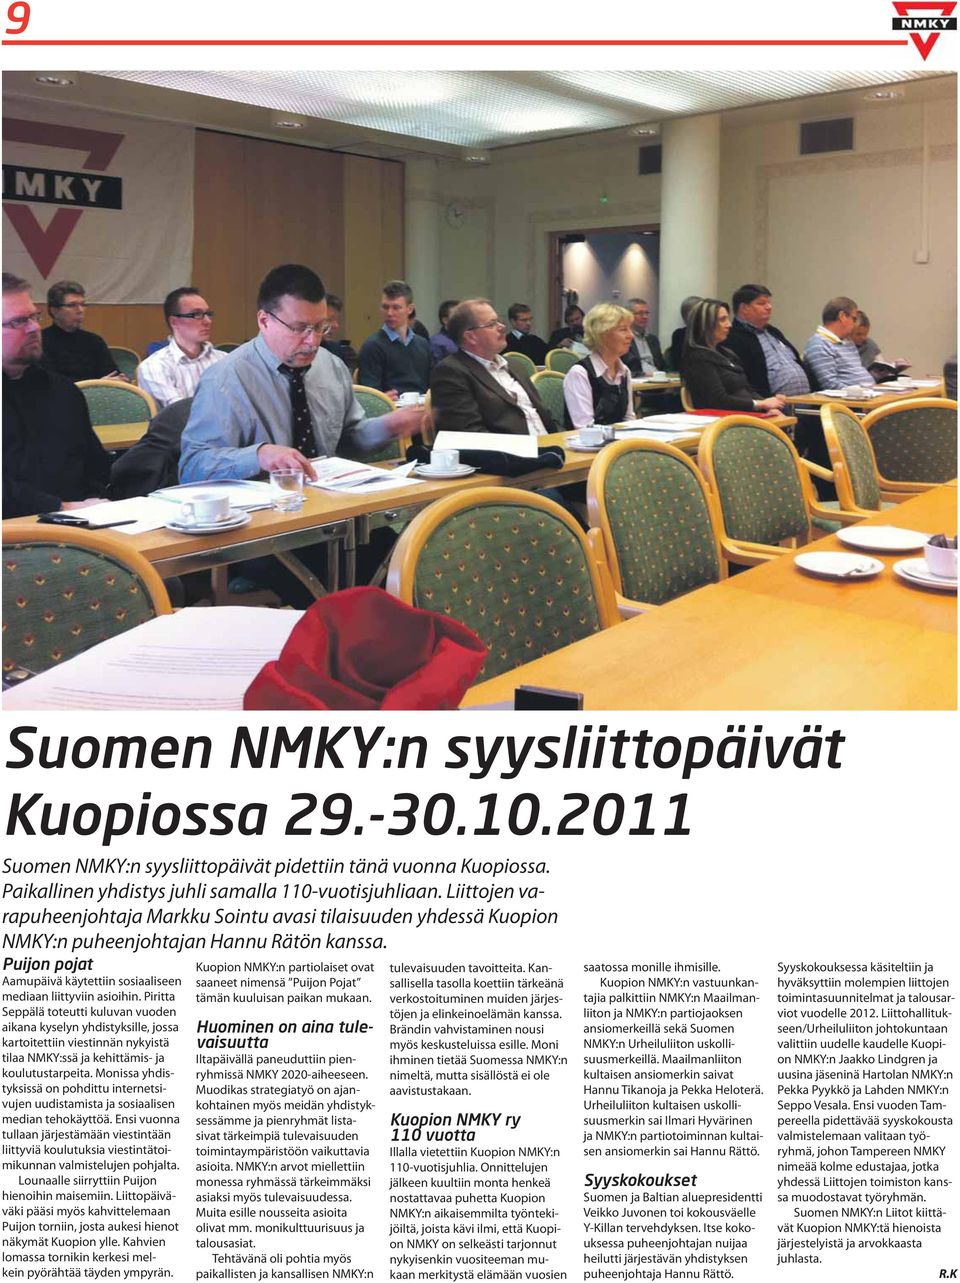 Piritta Seppälä toteutti kuluvan vuoden aikana kyselyn yhdistyksille, jossa kartoitettiin viestinnän nykyistä tilaa NMKY:ssä ja kehittämis- ja koulutustarpeita.